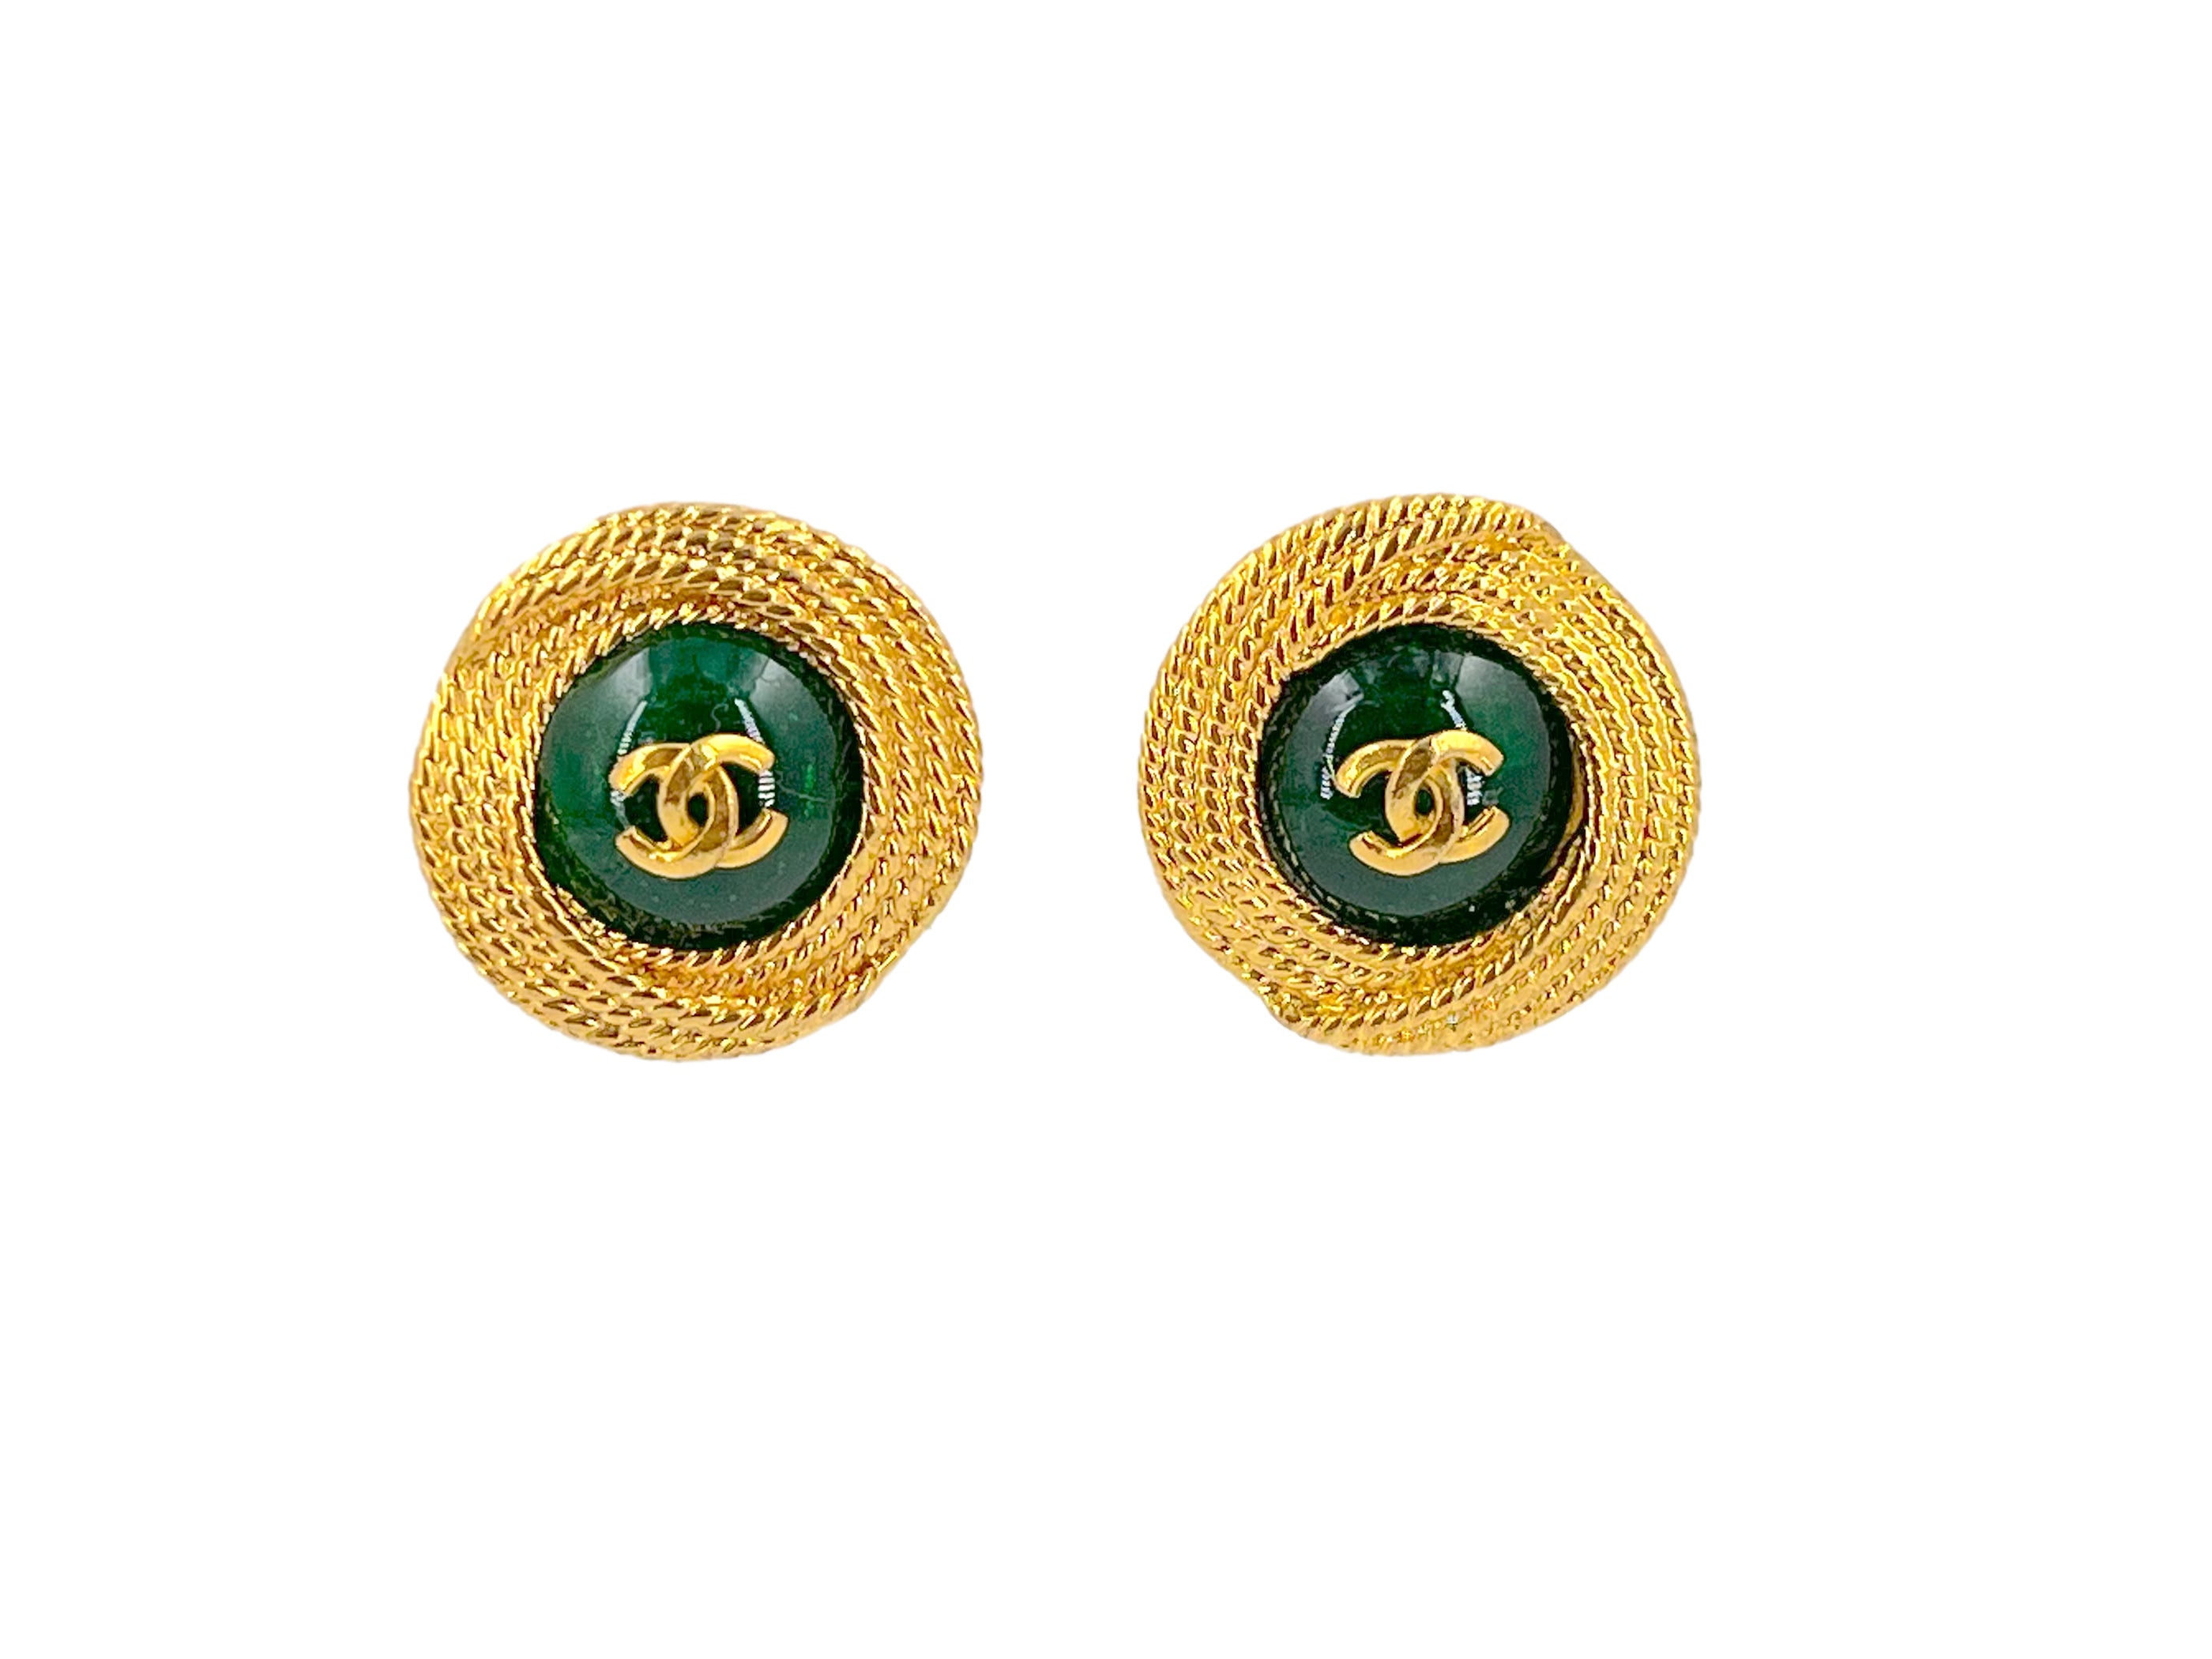 CHANEL, Jewelry, Chanel Cc Turnlock Earrings Vintage